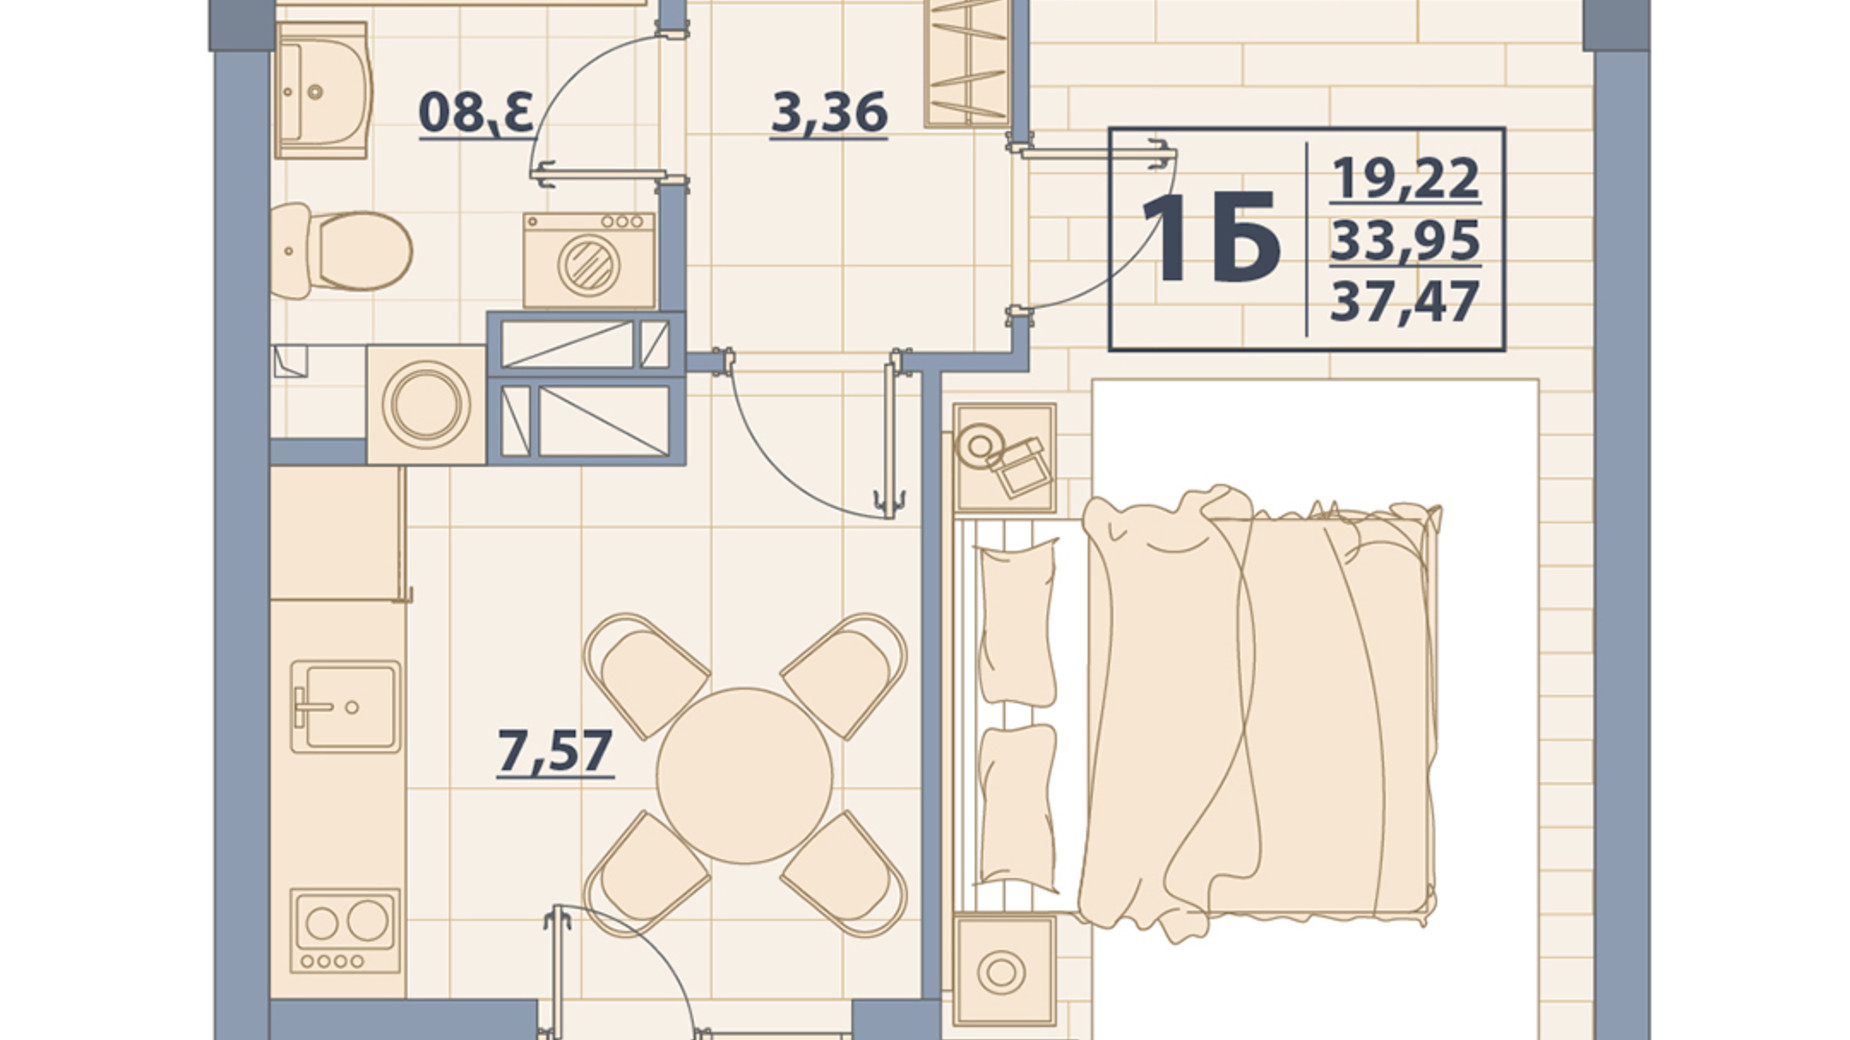 Планировка 1-комнатной квартиры в ЖК Centr City 37.47 м², фото 579648